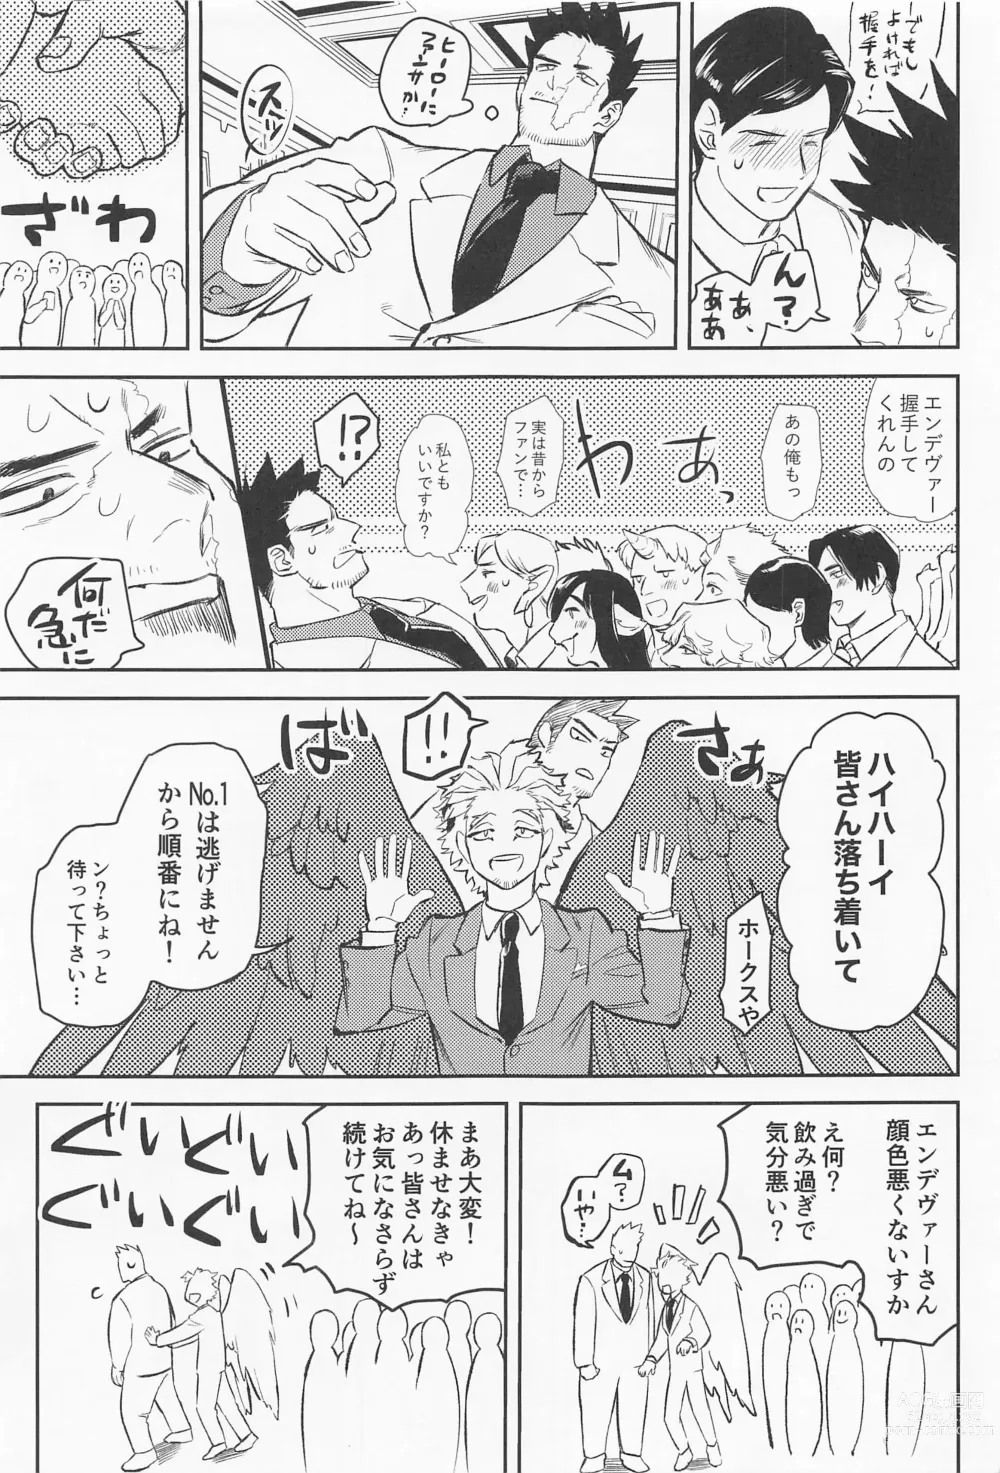 Page 6 of doujinshi Soredemo Aishitai